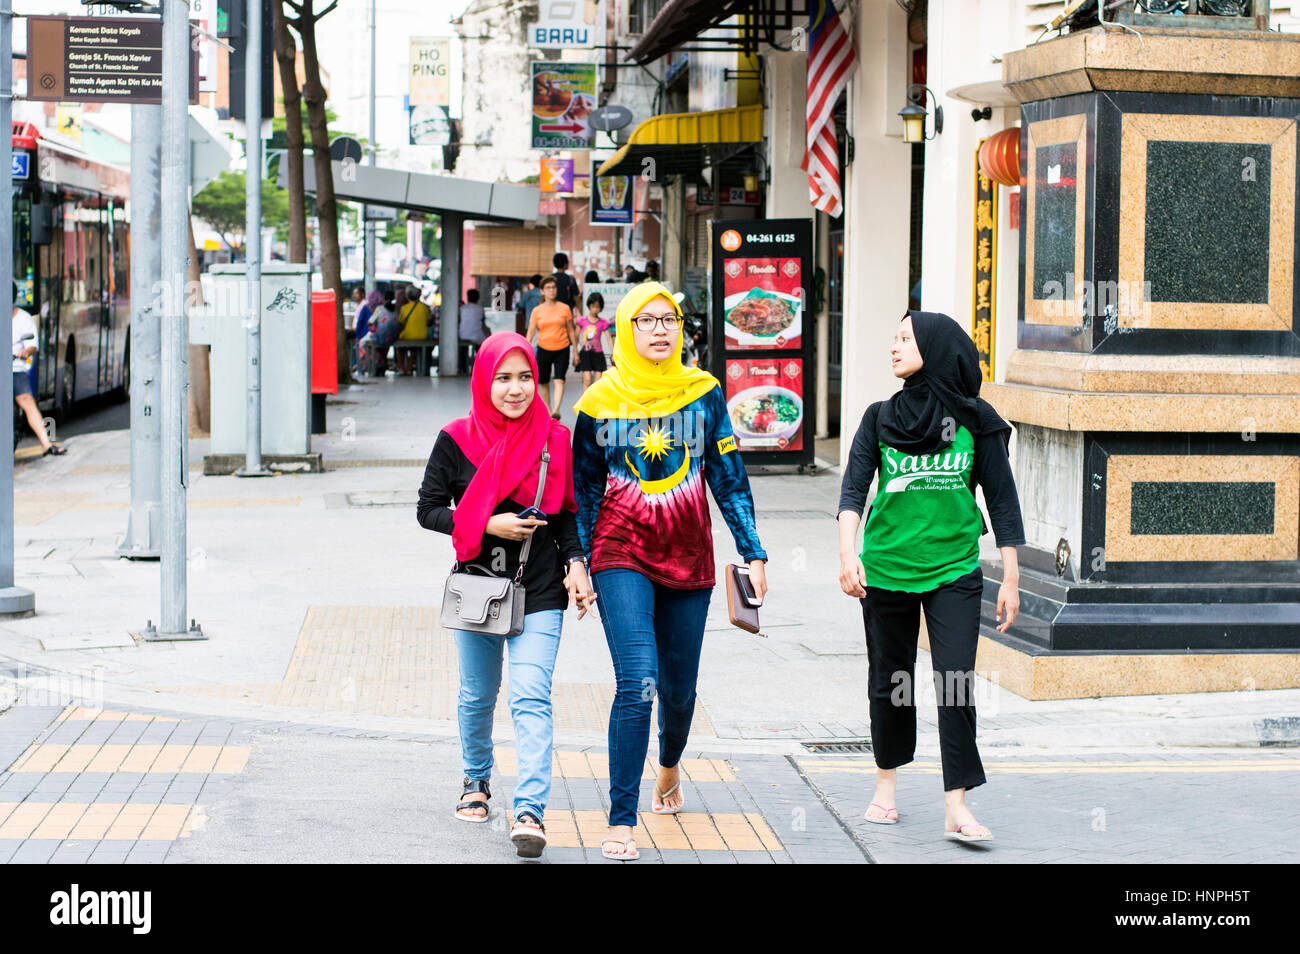 Pedestrians, Jalan Penang, Georgetown, Penang, Malaysia Stock Photo